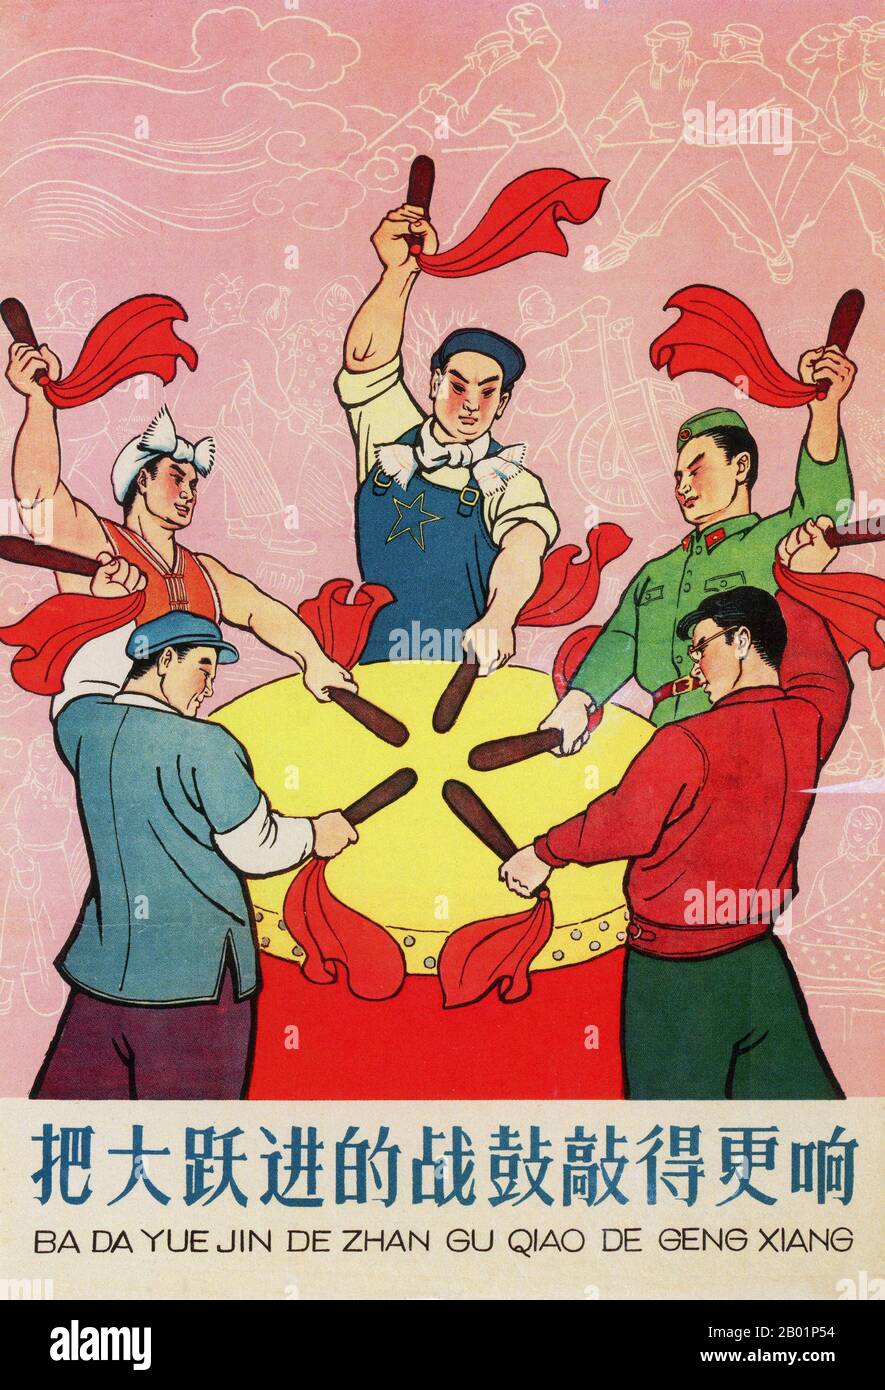 China: 'Schlagt die Kampftrommel des Großen Sprünges immer lauter nach vorne!' Propagandaplakat des Großen Sprünges (1958–1961) von Shao Wenjin, 1959. Der große Sprung nach vorne in der Volksrepublik China (VR China) war eine wirtschaftliche und soziale Kampagne der Kommunistischen Partei Chinas (KPC), die sich in Planungsentscheidungen von 1958 bis 1961 widerspiegelte. die darauf abzielte, Chinas riesige Bevölkerung zu nutzen, um das Land durch den Prozess der raschen Industrialisierung und Kollektivierung rasch von einer Agrarwirtschaft in eine moderne kommunistische Gesellschaft zu verwandeln. Stockfoto